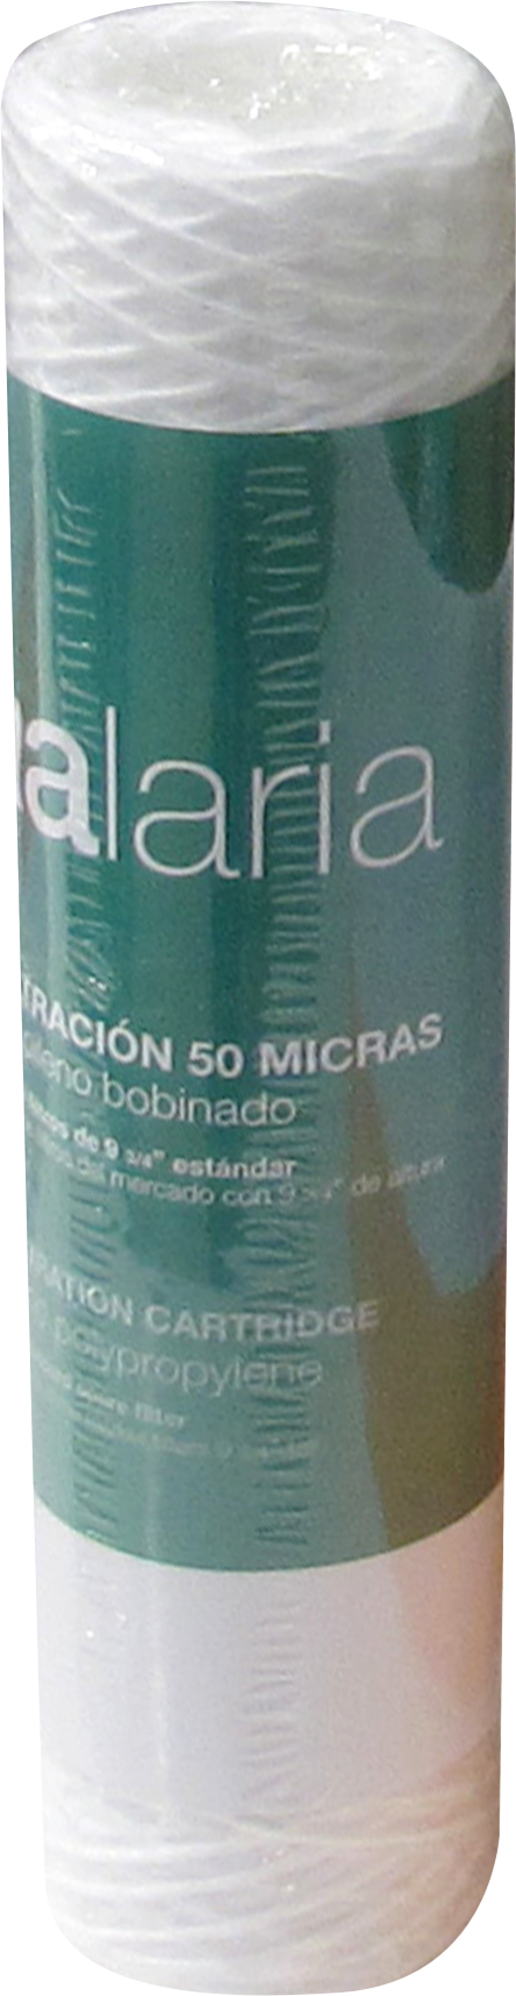 Cartucho filtro antical 9 y 3/4 50 Micras